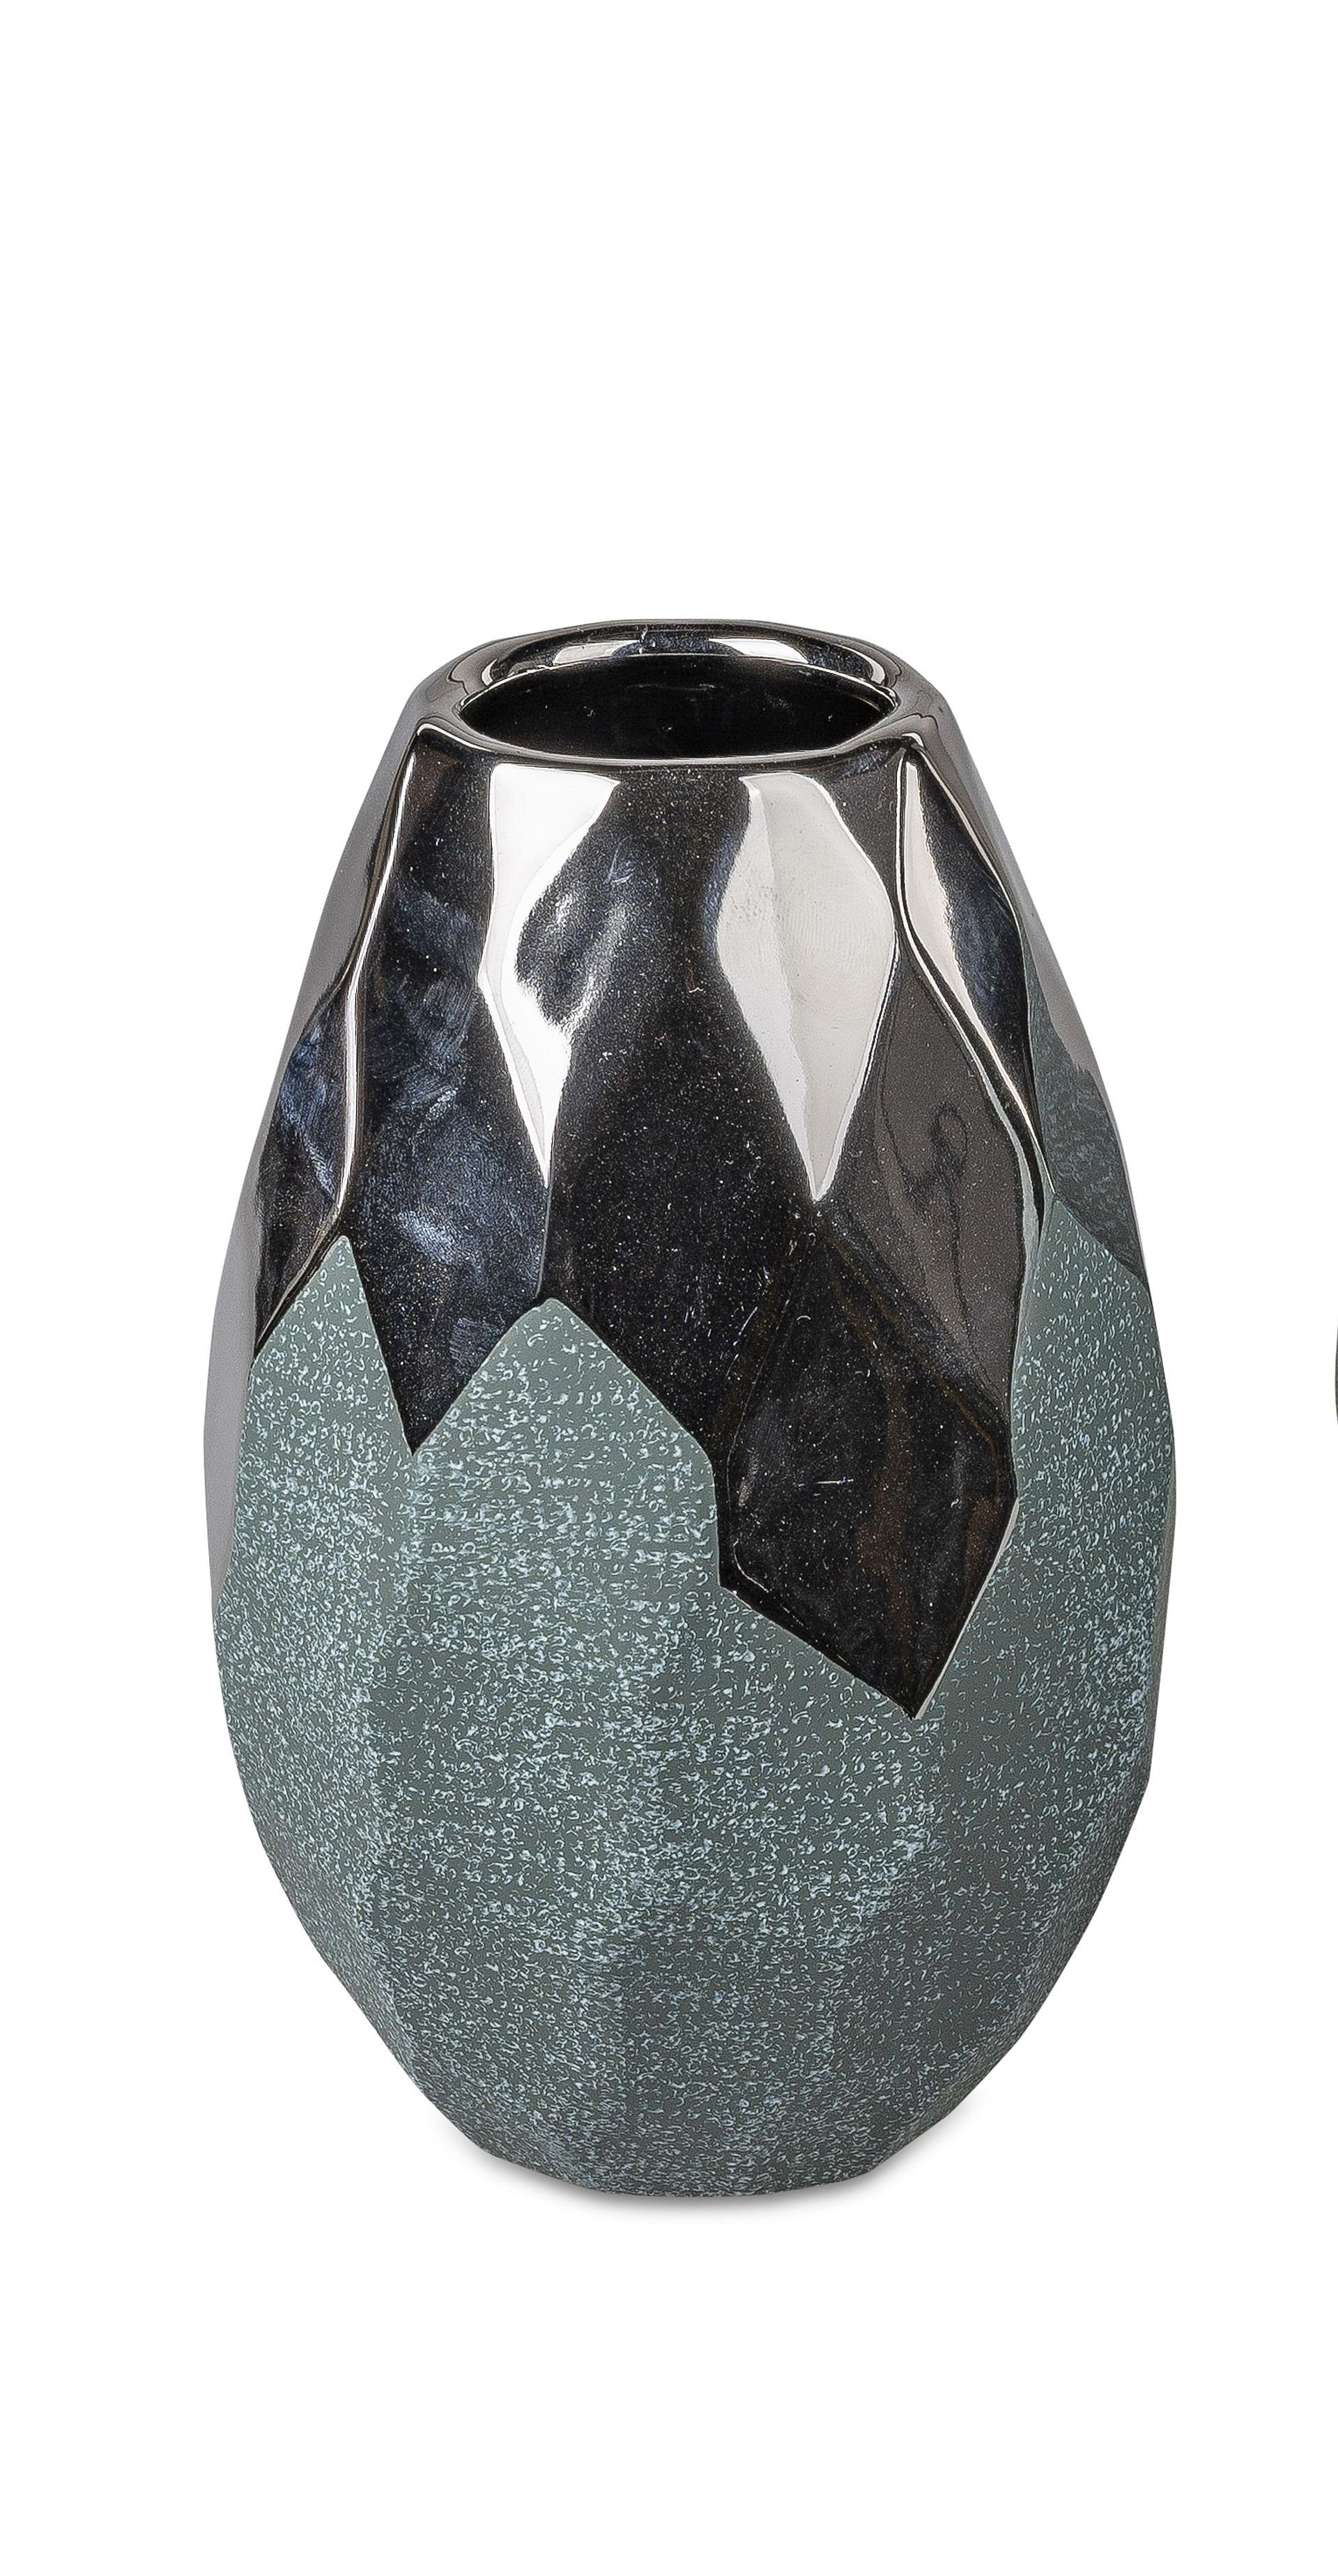 Formano in Small-Preis Vase Silber in 2 / wählbar, Petrol rund aus Keramik Dekovase Formen Tischvase